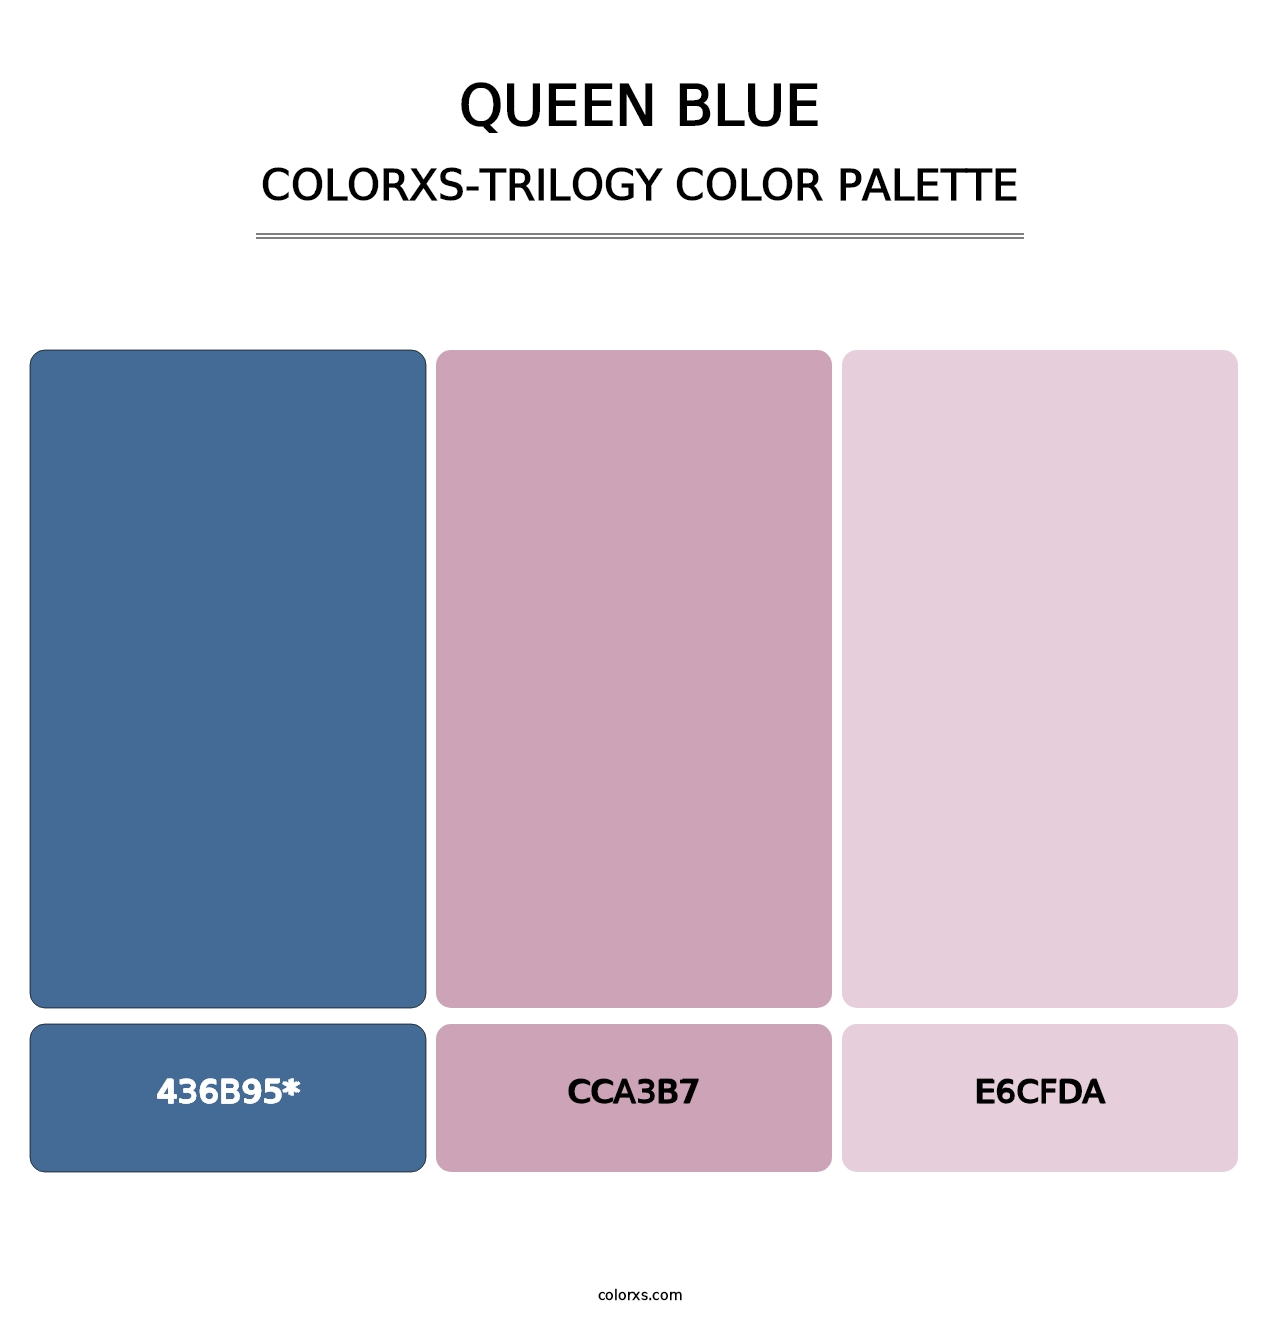 Queen Blue - Colorxs Trilogy Palette